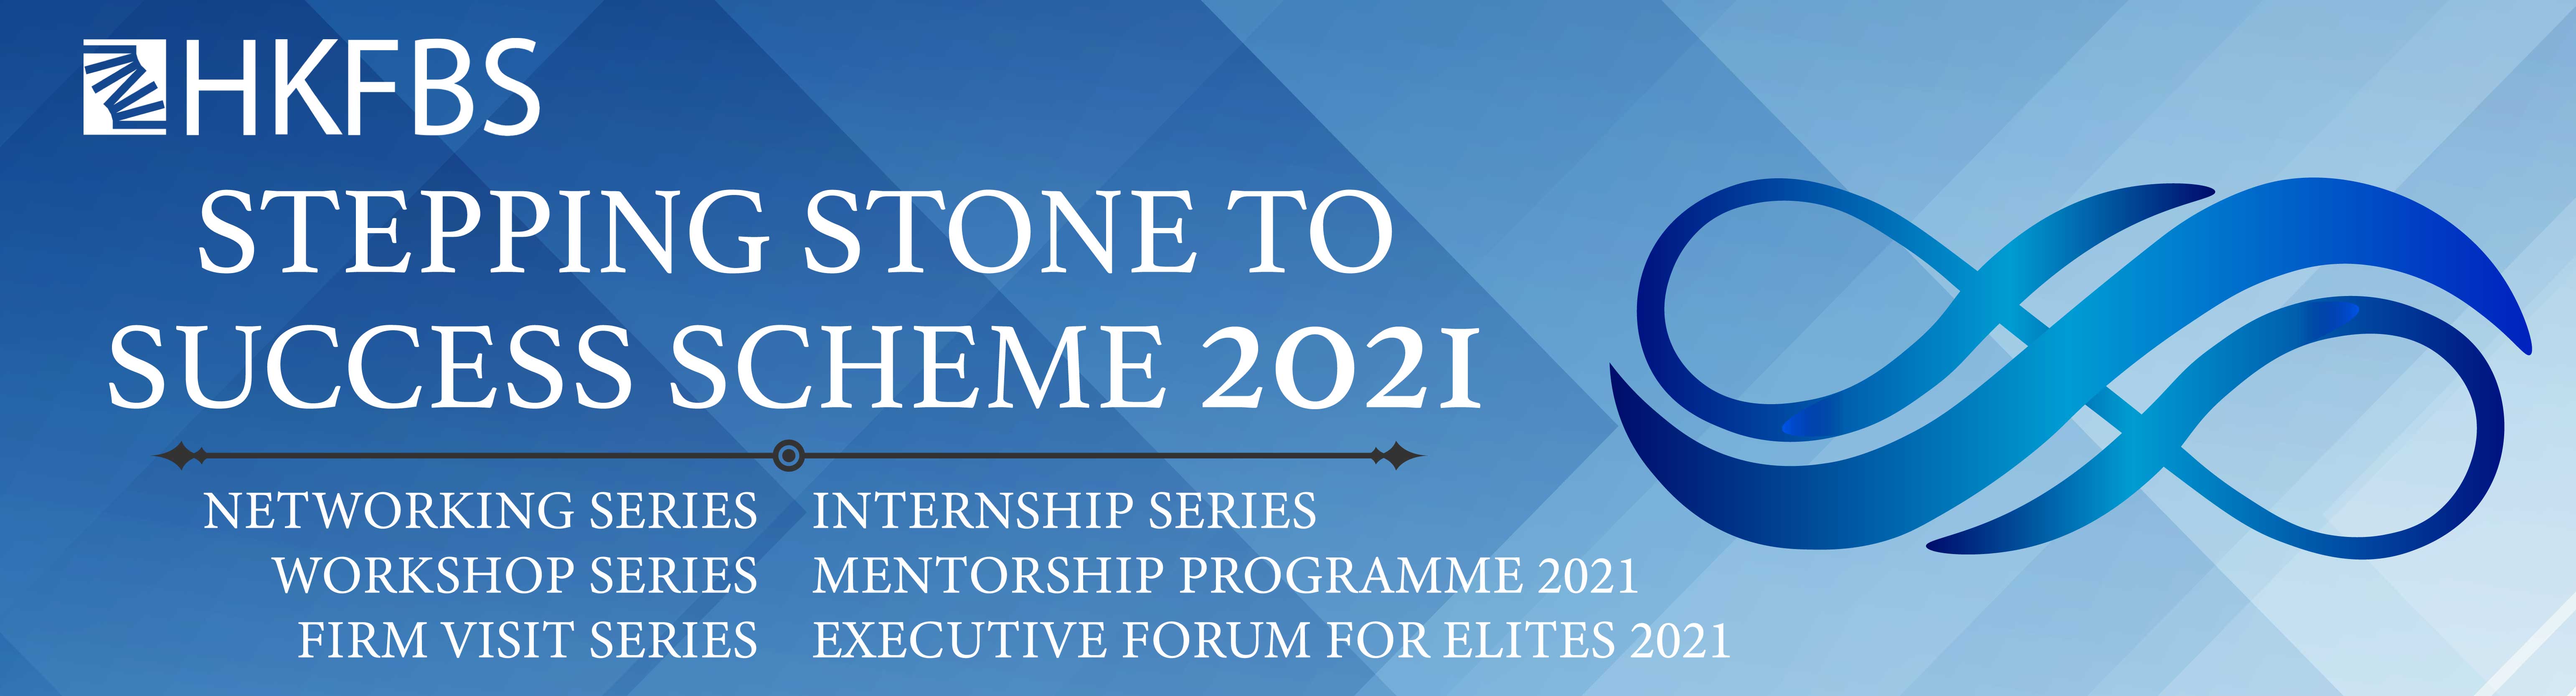 Executive Forum for Elites 2021